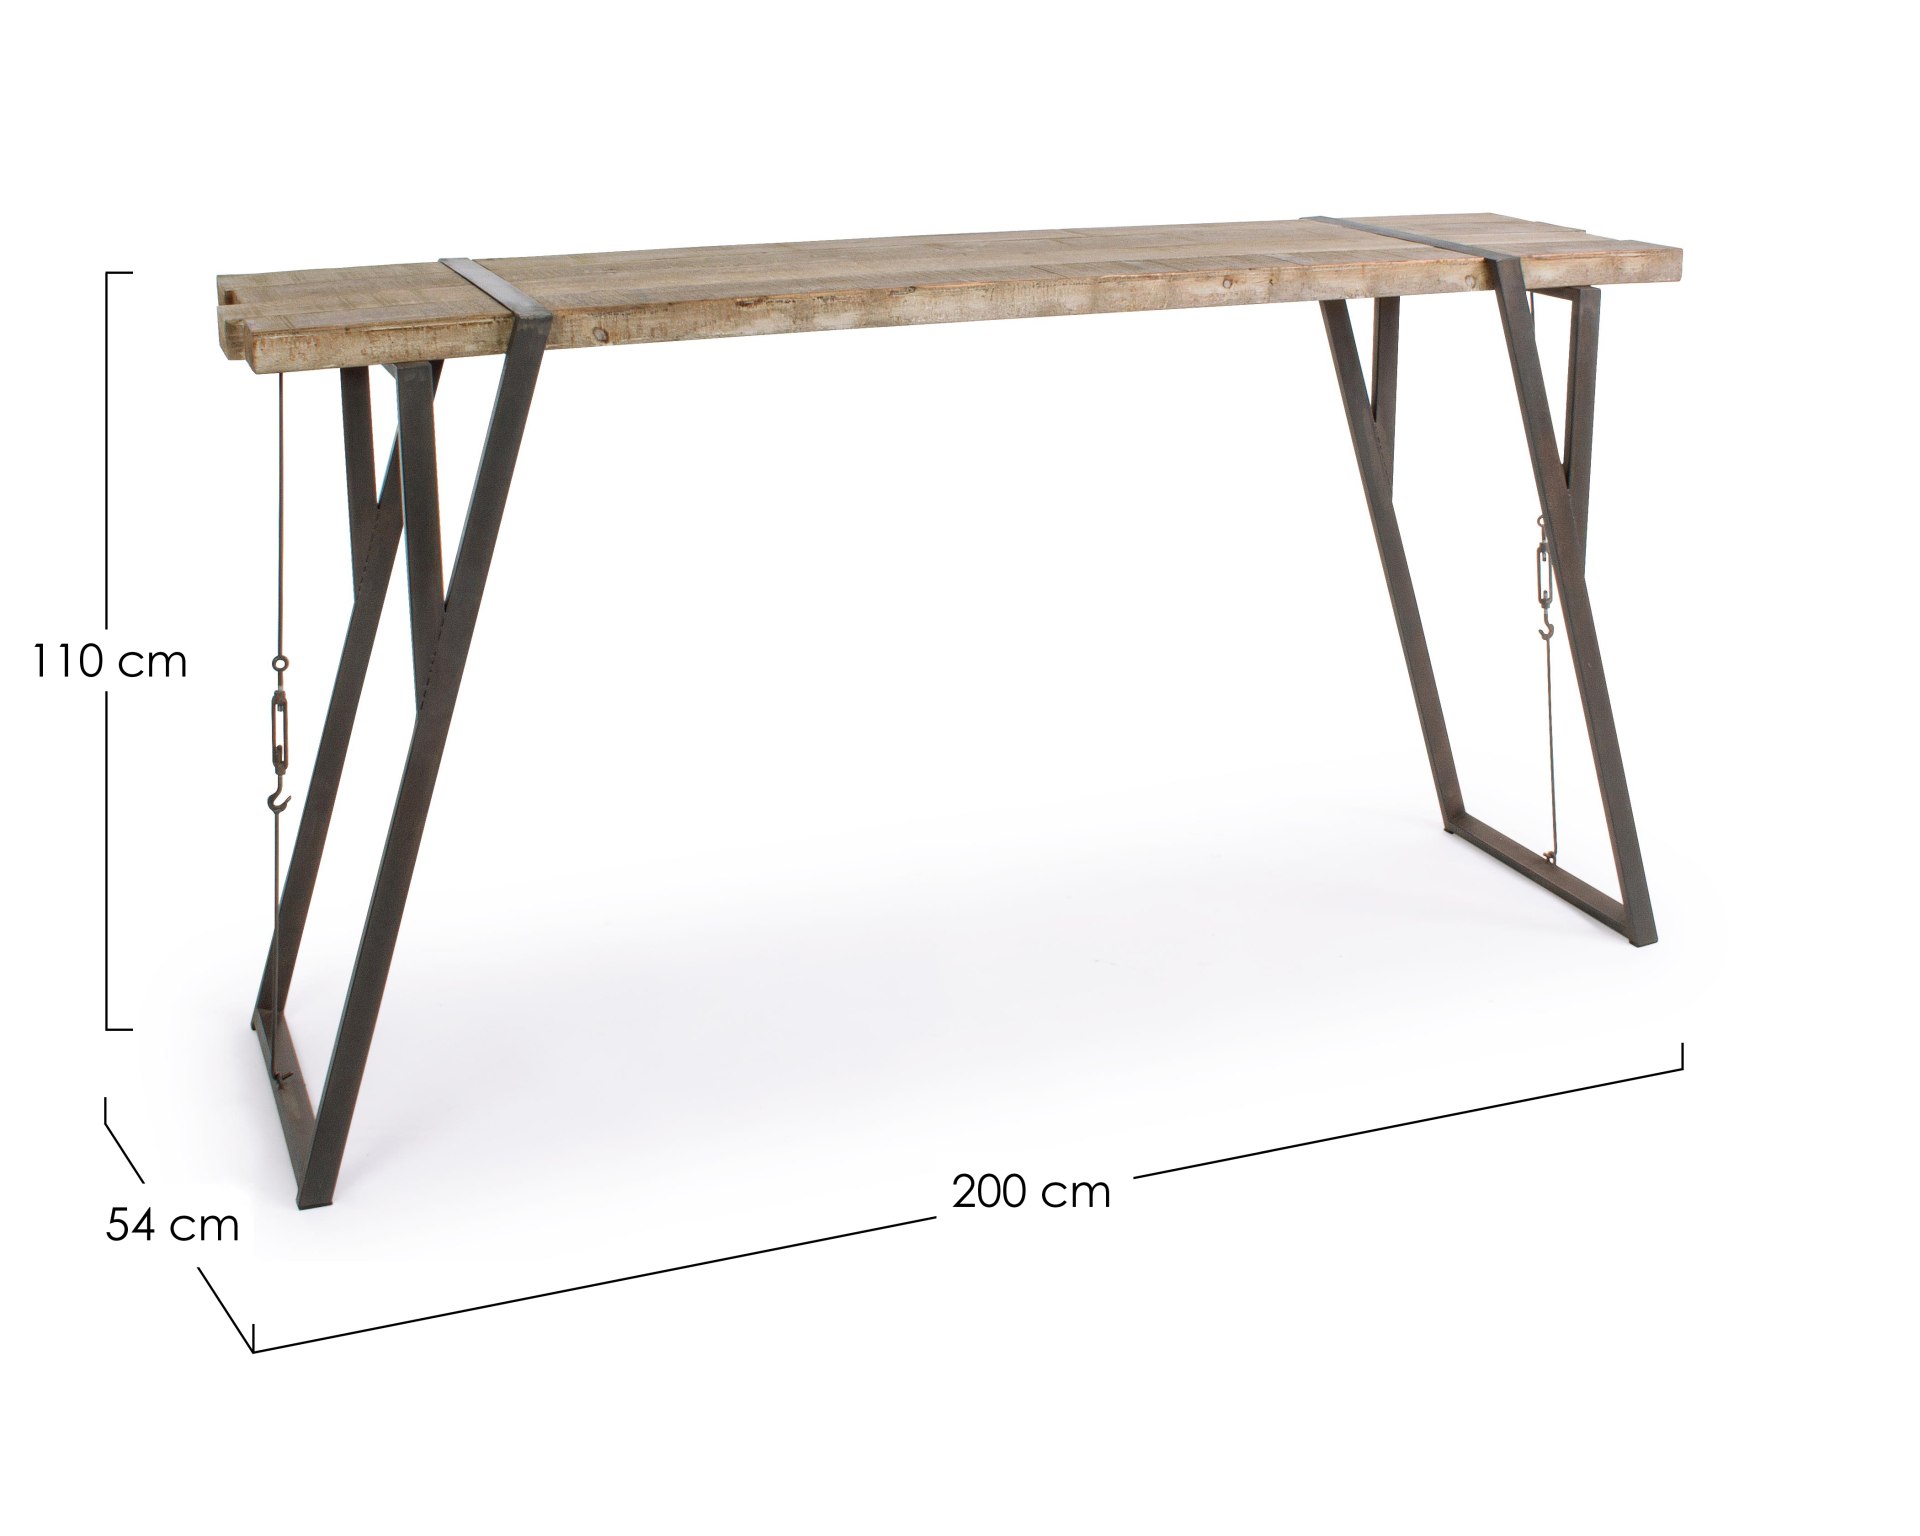 Der Bartisch Blocks überzeugt mit seinem moderndem Design. Gefertigt wurde er aus Fichtenholz, welches einen natürlichen Farbton besitzt. Das Gestell des Tisches ist aus Metall und ist in eine schwarze Farbe. Der Tisch besitzt eine Breite von 200 cm.